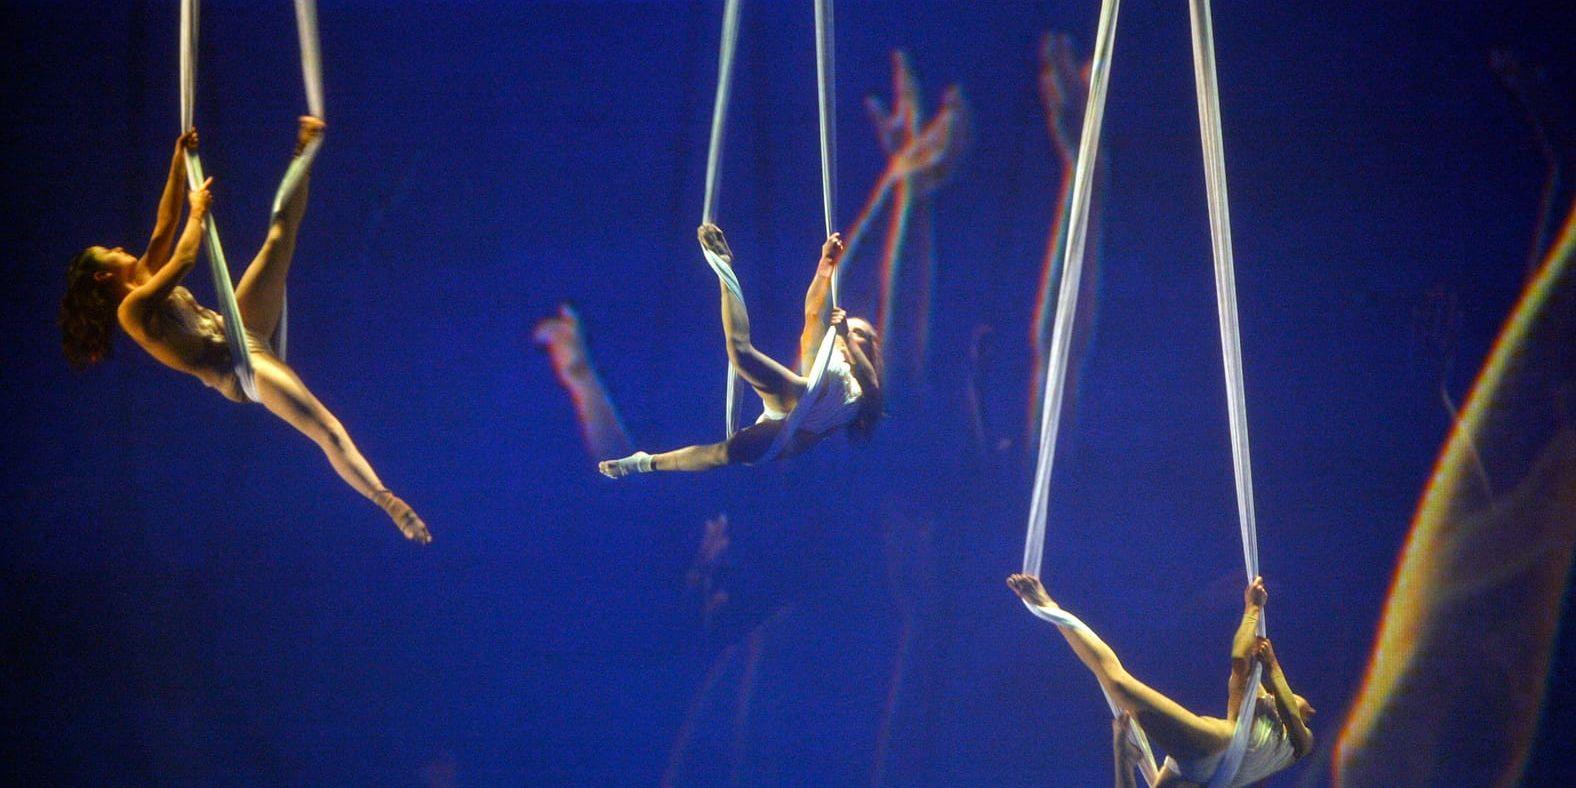 En manlig akrobat dog efter ett fall under en föreställning med Cirque du Soleil, rapporterar The Hollywood Reporter. Arkivbild.